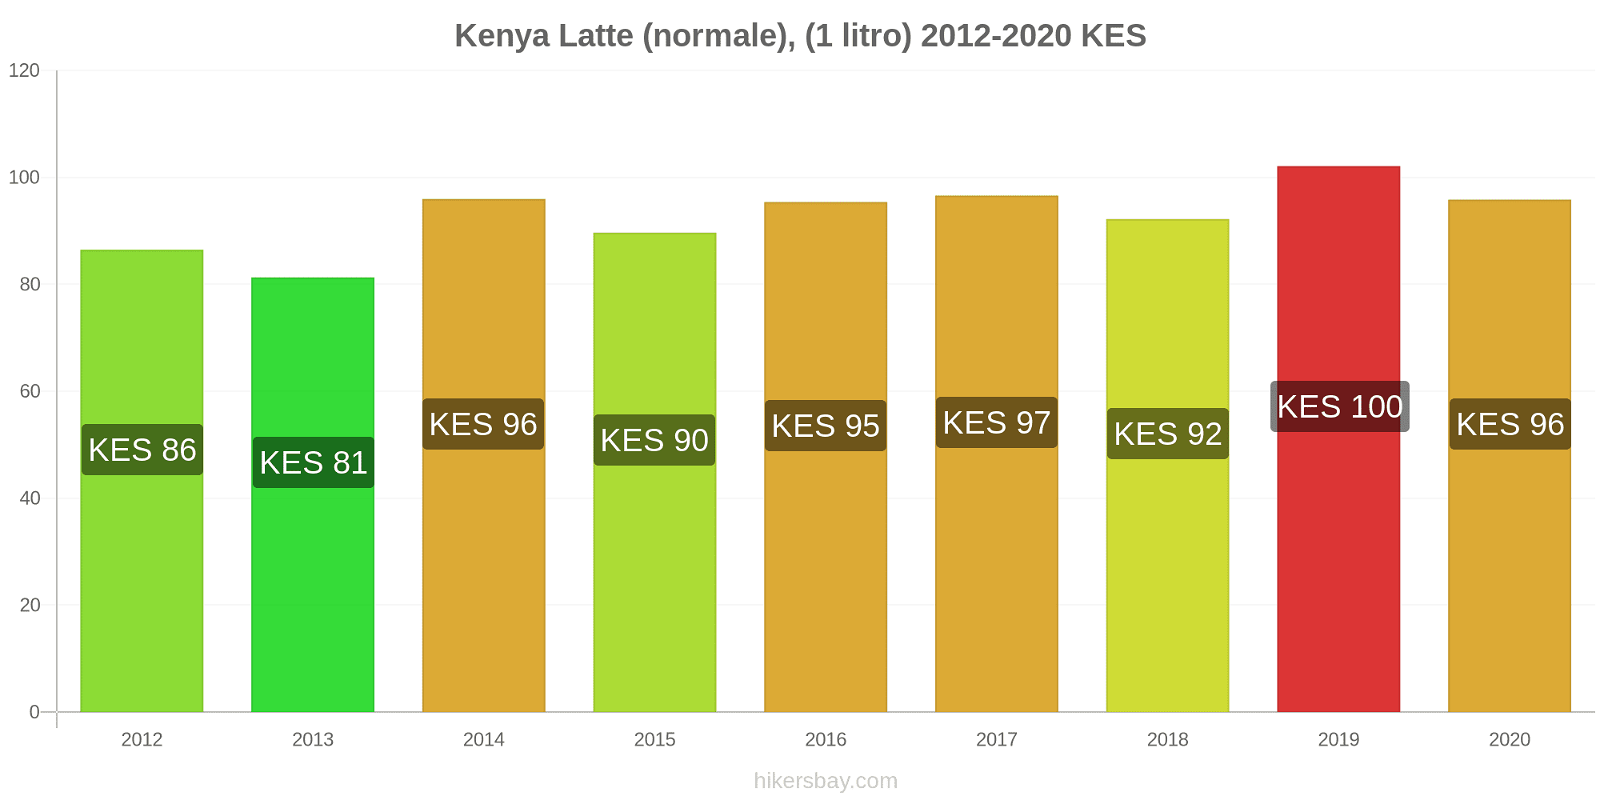 Kenya variazioni di prezzo Latte (1 litro) hikersbay.com